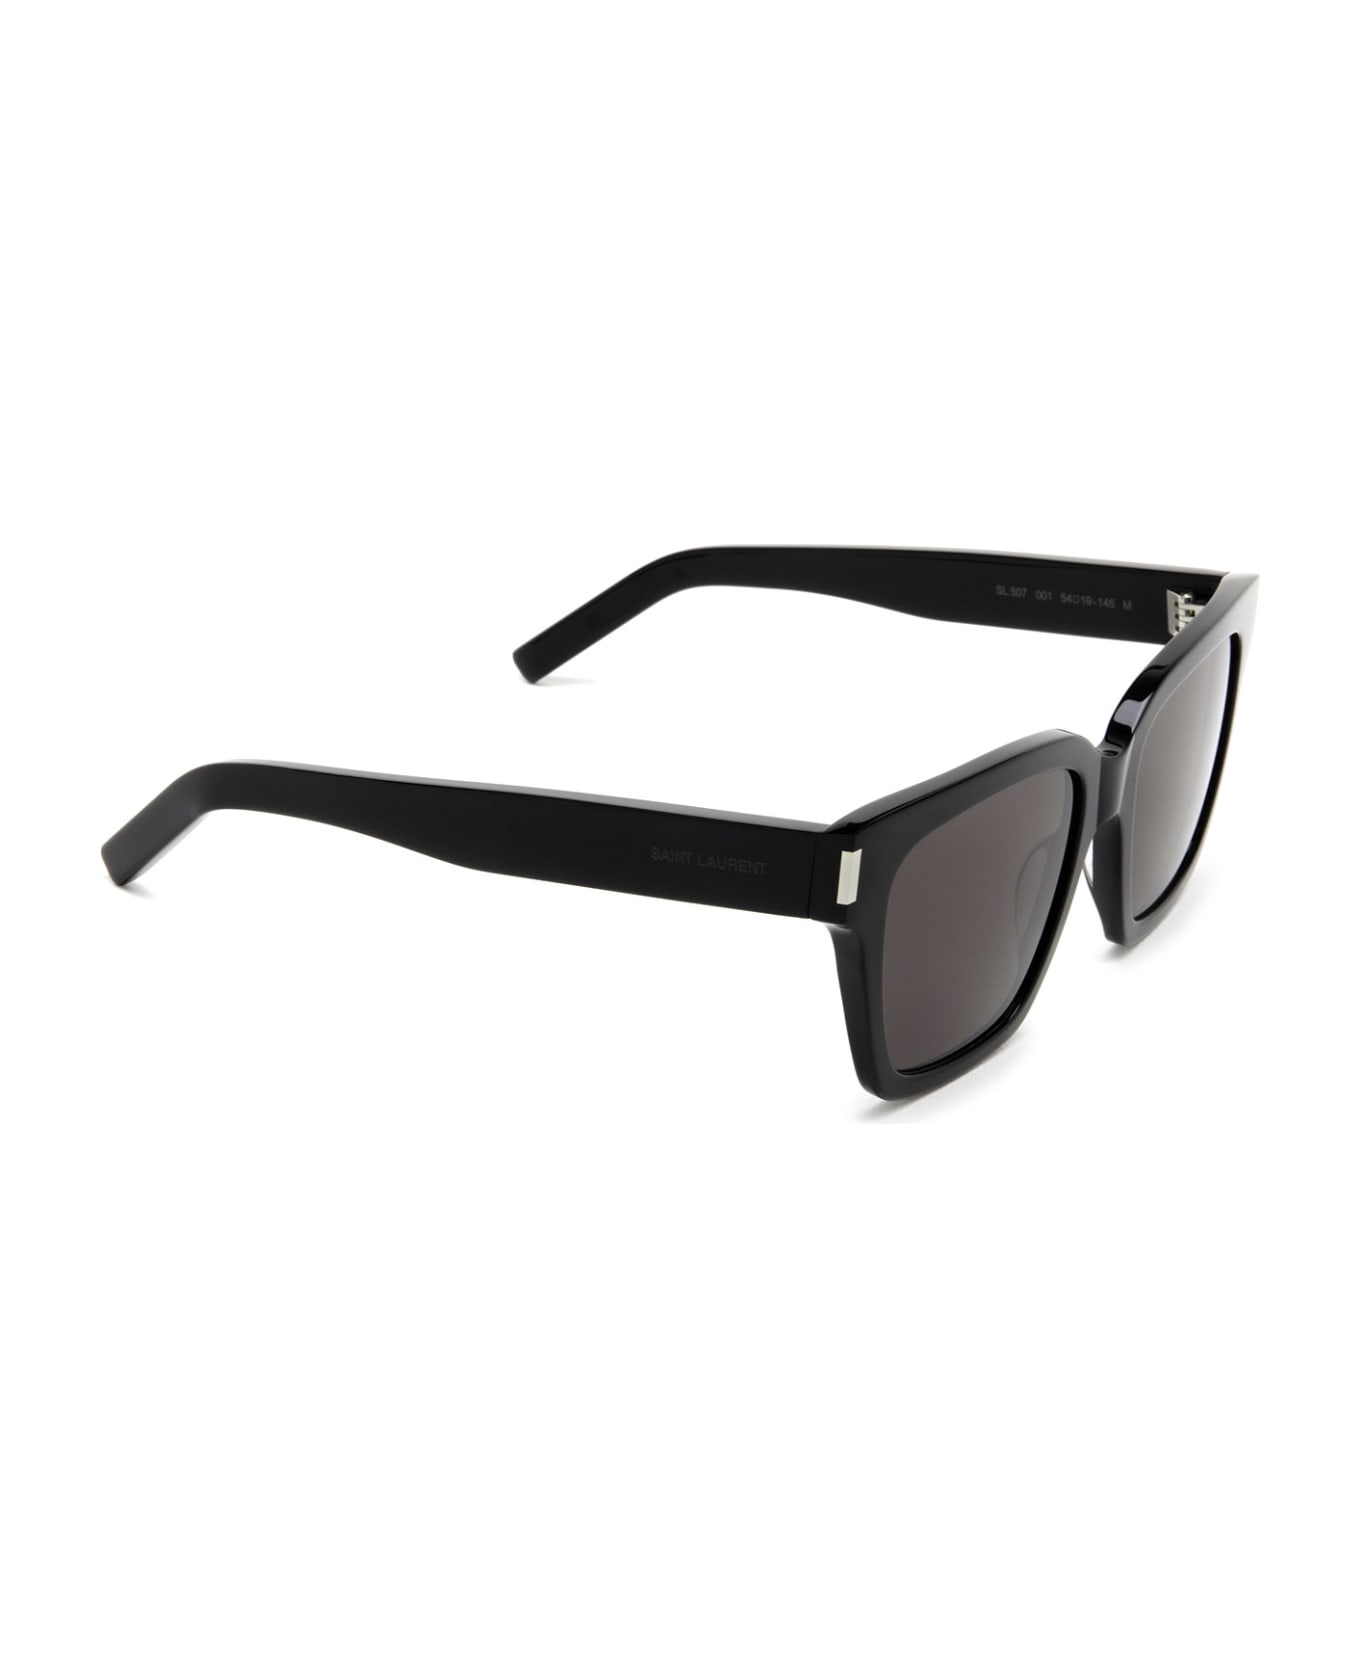 Saint Laurent Eyewear Sl 507 Black Sunglasses - Black